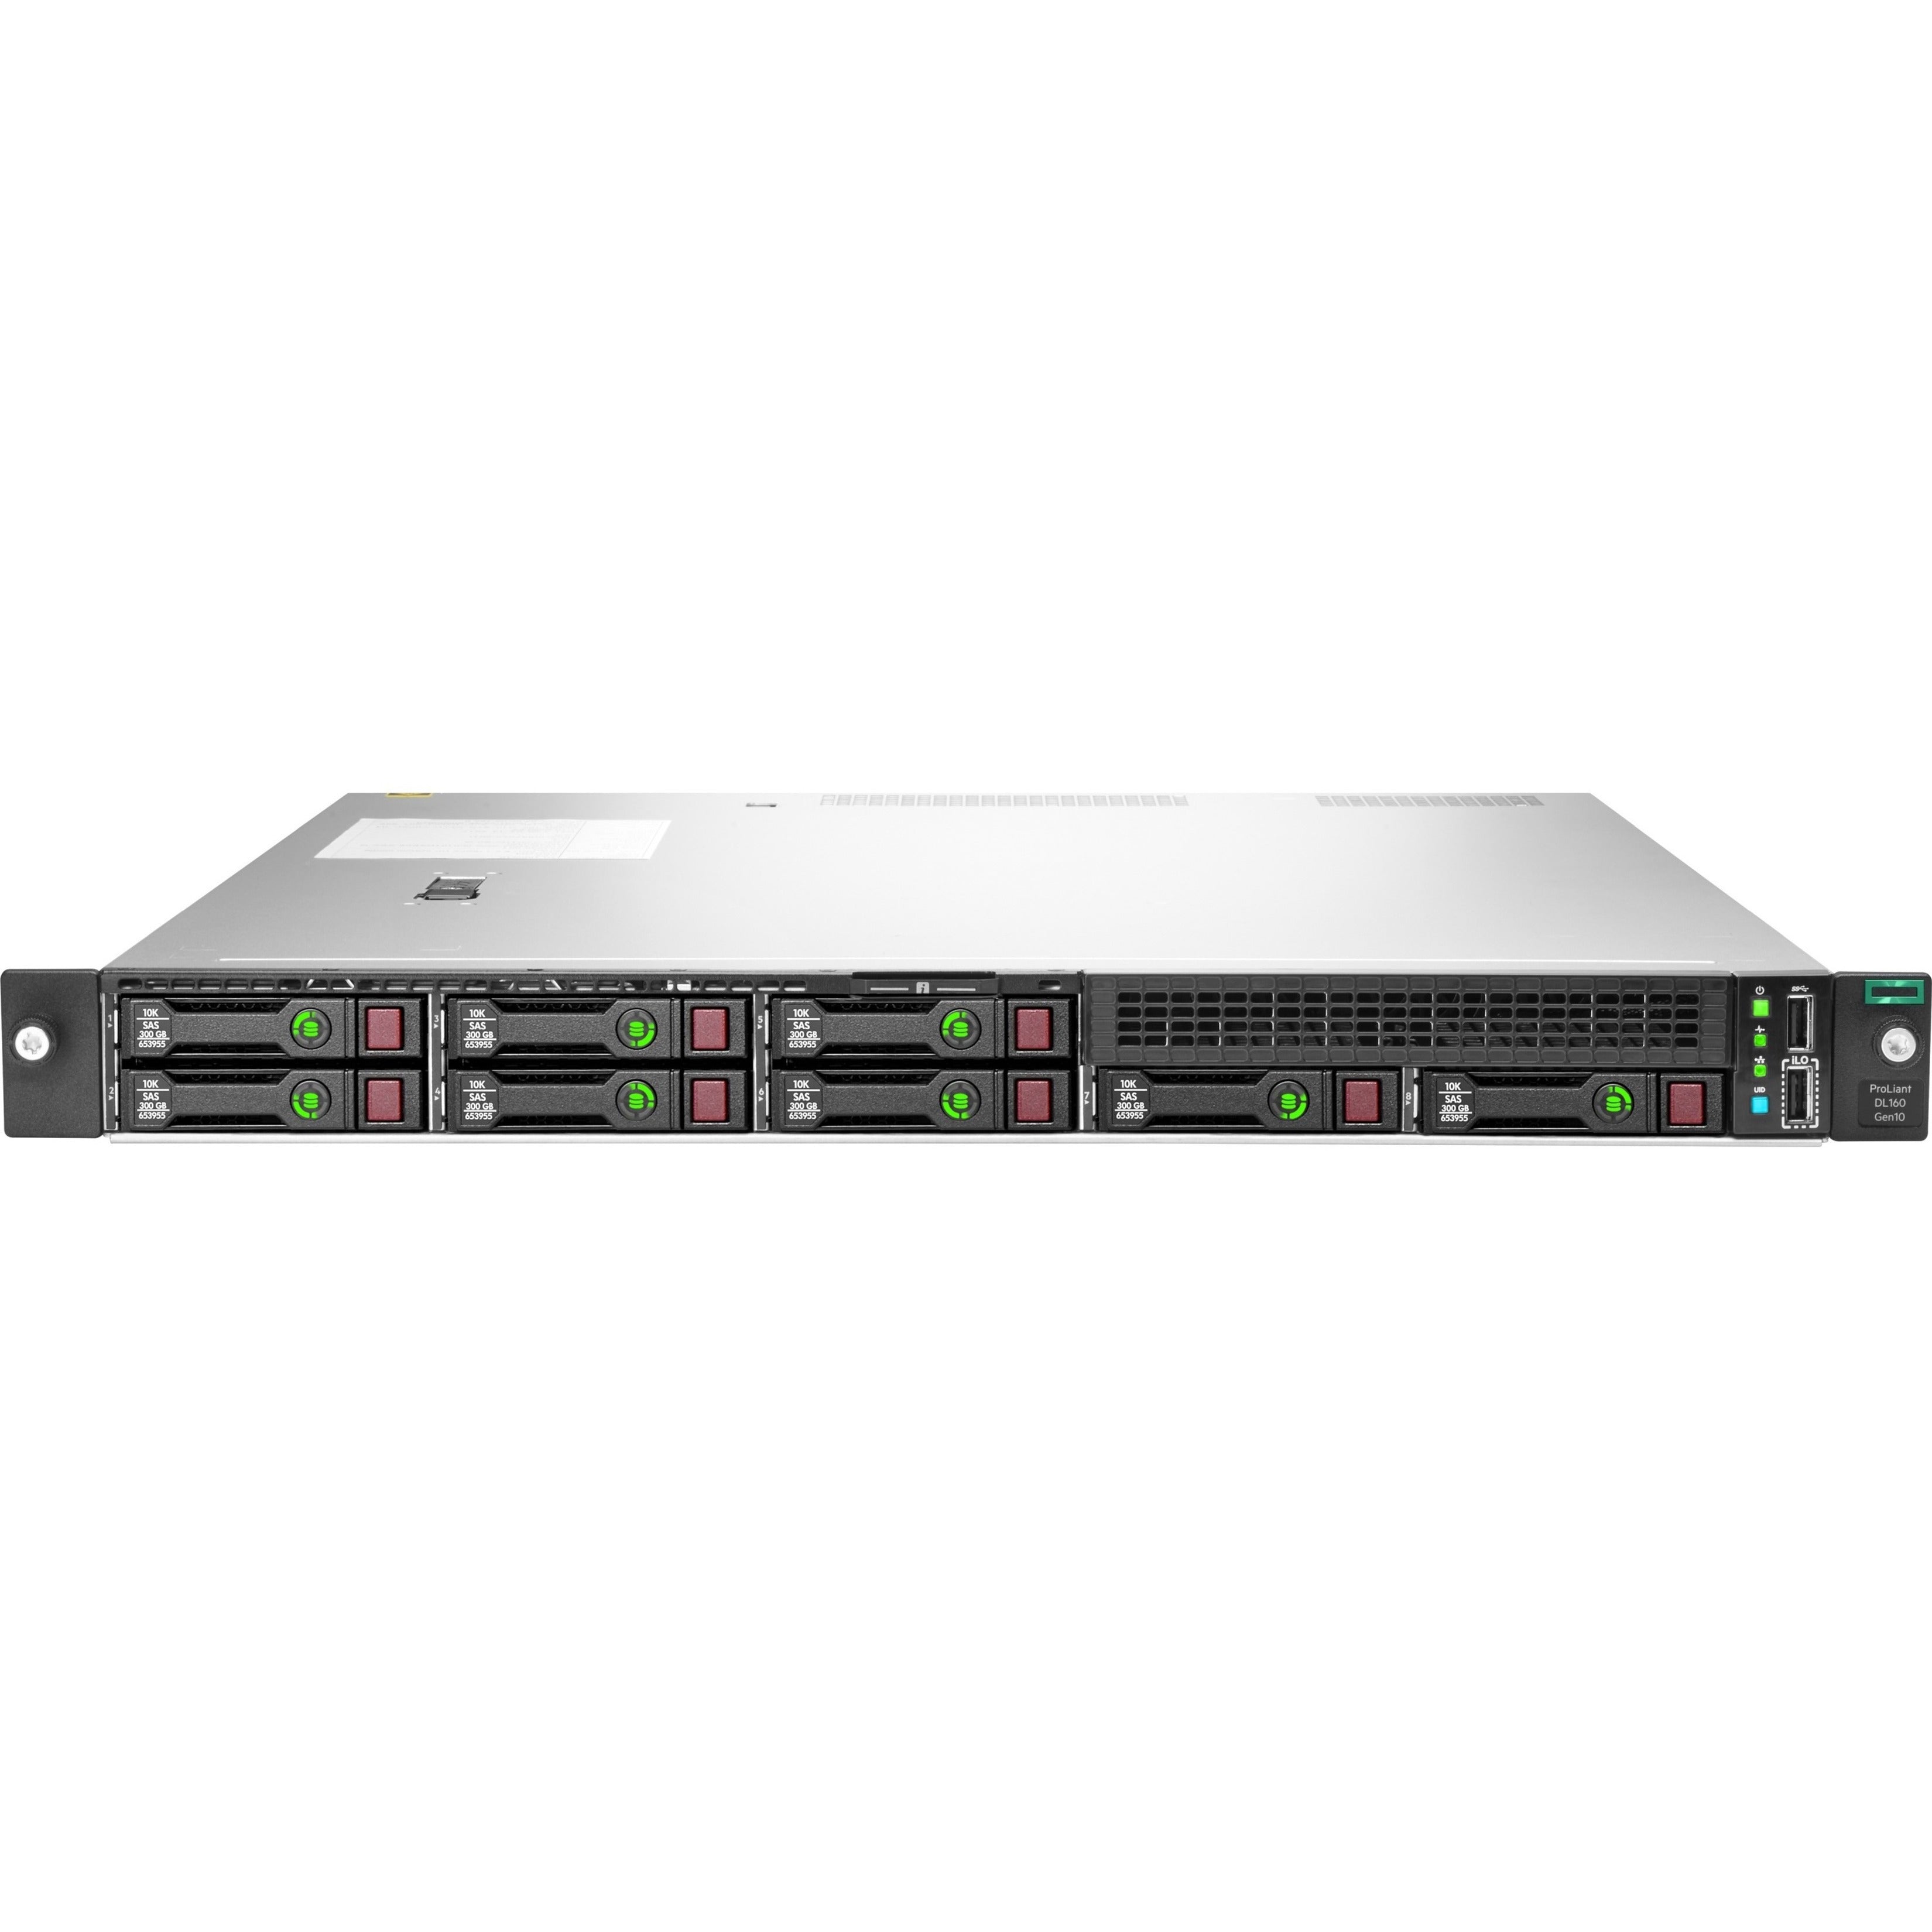 HPE ProLiant DL160 G10 1U Rack Server - Intel Xeon Silver 4210R, 16GB RAM, Serial ATA/600 Controller [Discontinued]